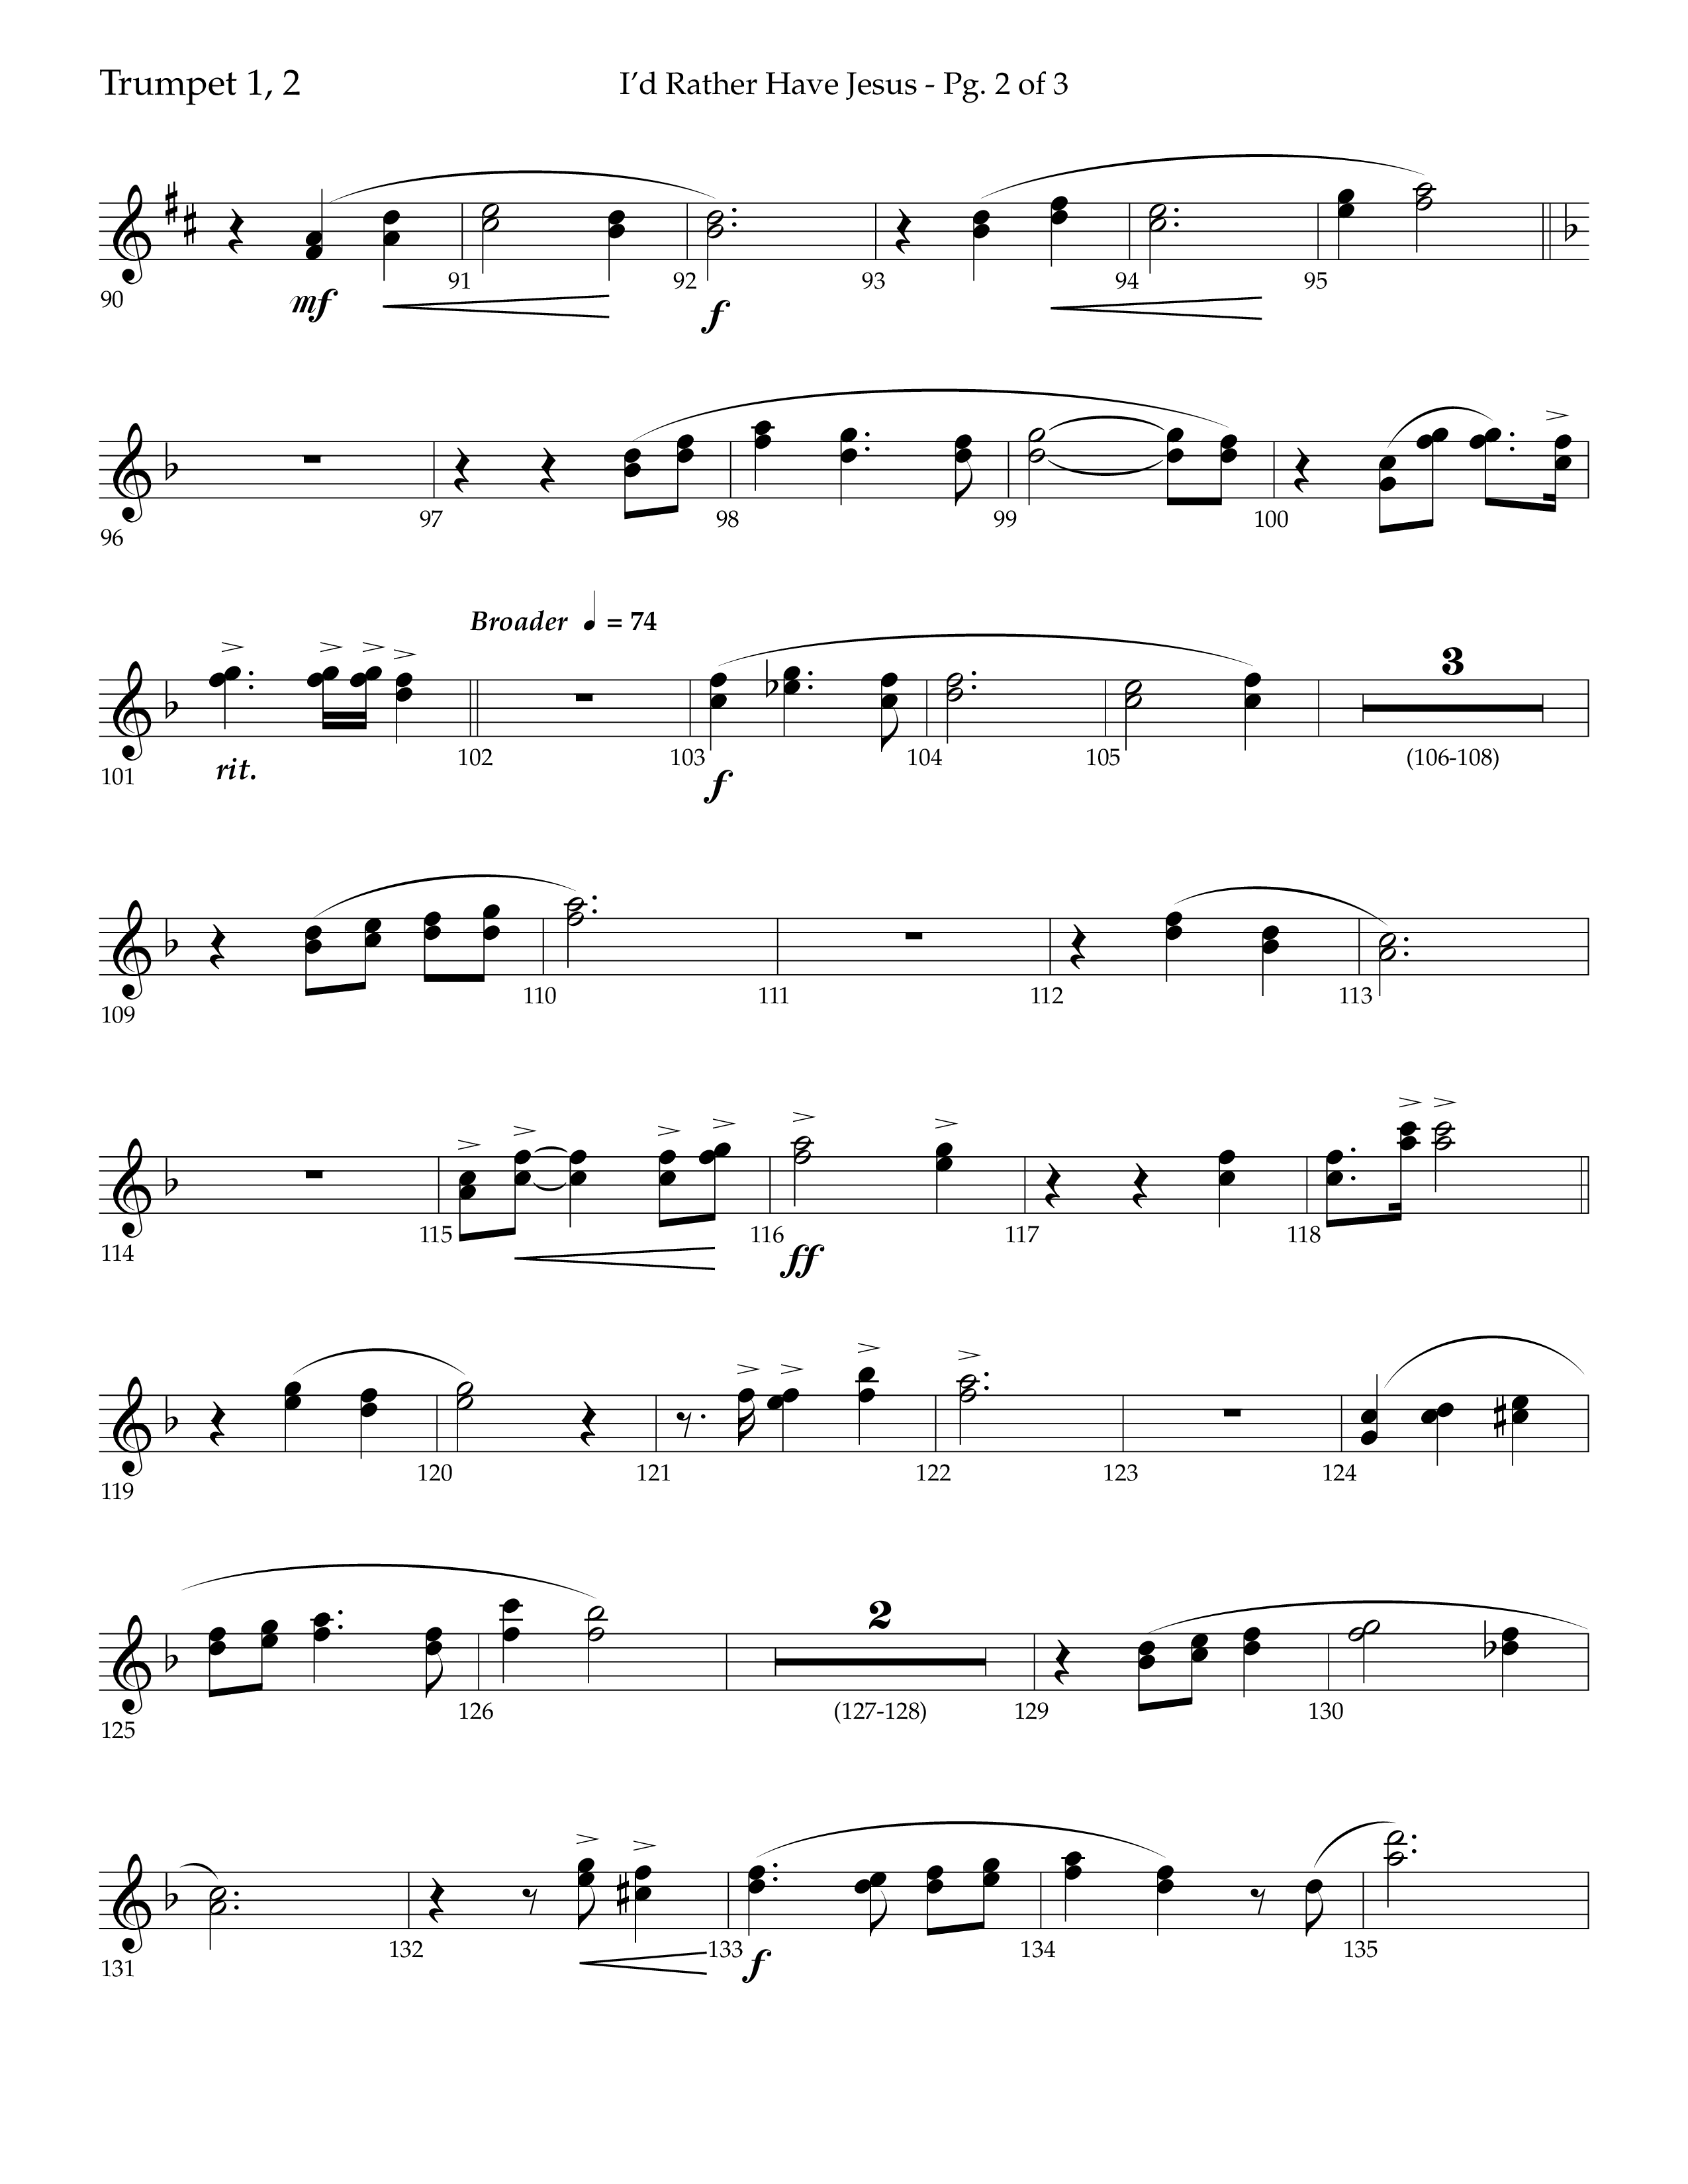 I'd Rather Have Jesus (Choral Anthem SATB) Trumpet 1,2 (Lifeway Choral / Arr. Richard Kingsmore)